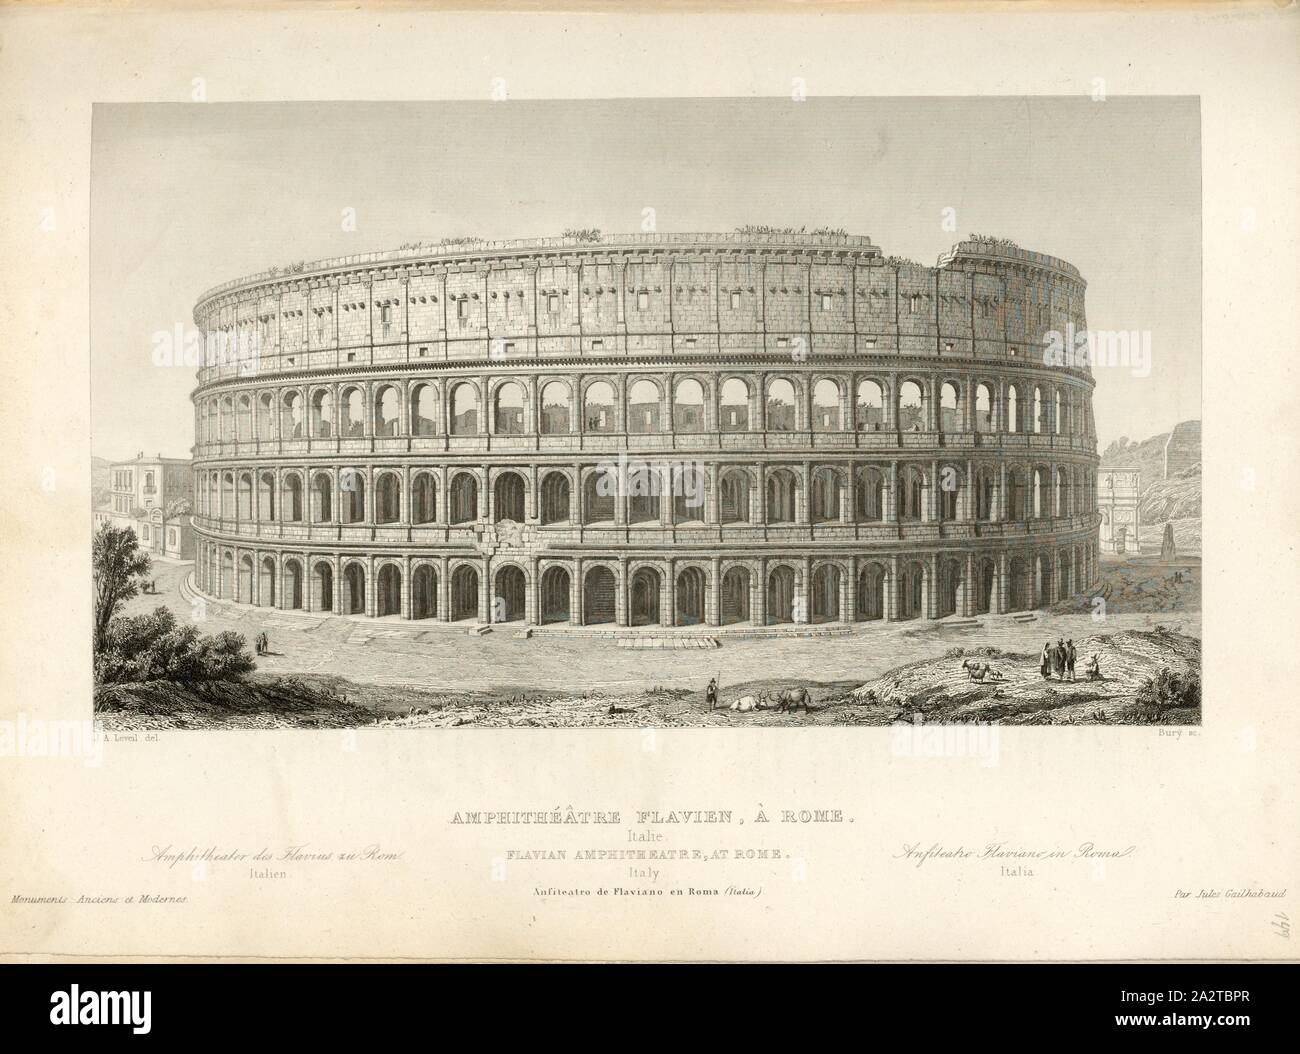 Flavian Amphitheater, Rome, Amphitheatrium Flavium or Colosseum in Rome, signed: J. A. Leveil (del.); Bury (sc.), Fig. 88, p. 369, Leveil, J. A. (del.); Bury (sculp.), 1853, Jules Gailhabaud: Monuments anciens et modernes. Bd. 1. Paris: Librairie de Firmin Didot frères, 1853 Stock Photo